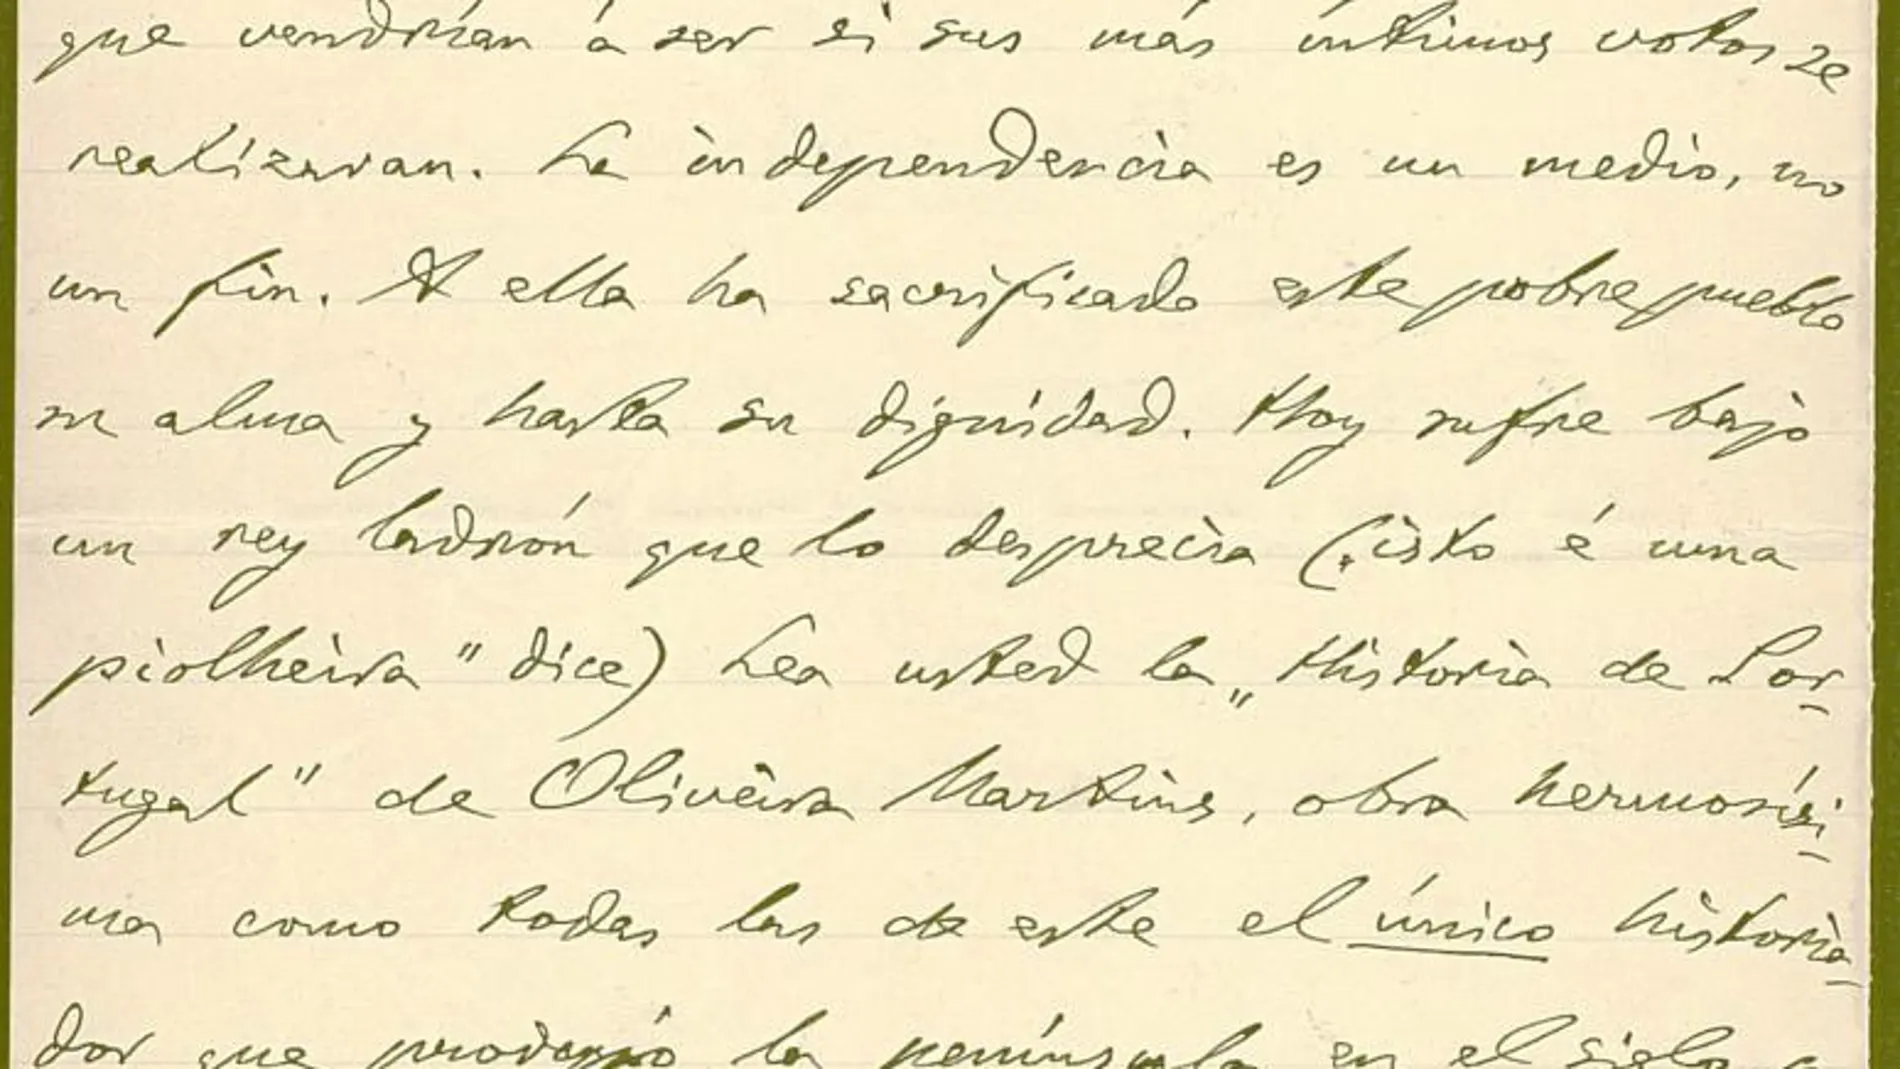 Esta carta de Unamuno (en la imagen) a Azorín fue escrita el 27 de junio de 1907 desde el Grande Hotel do Porto.